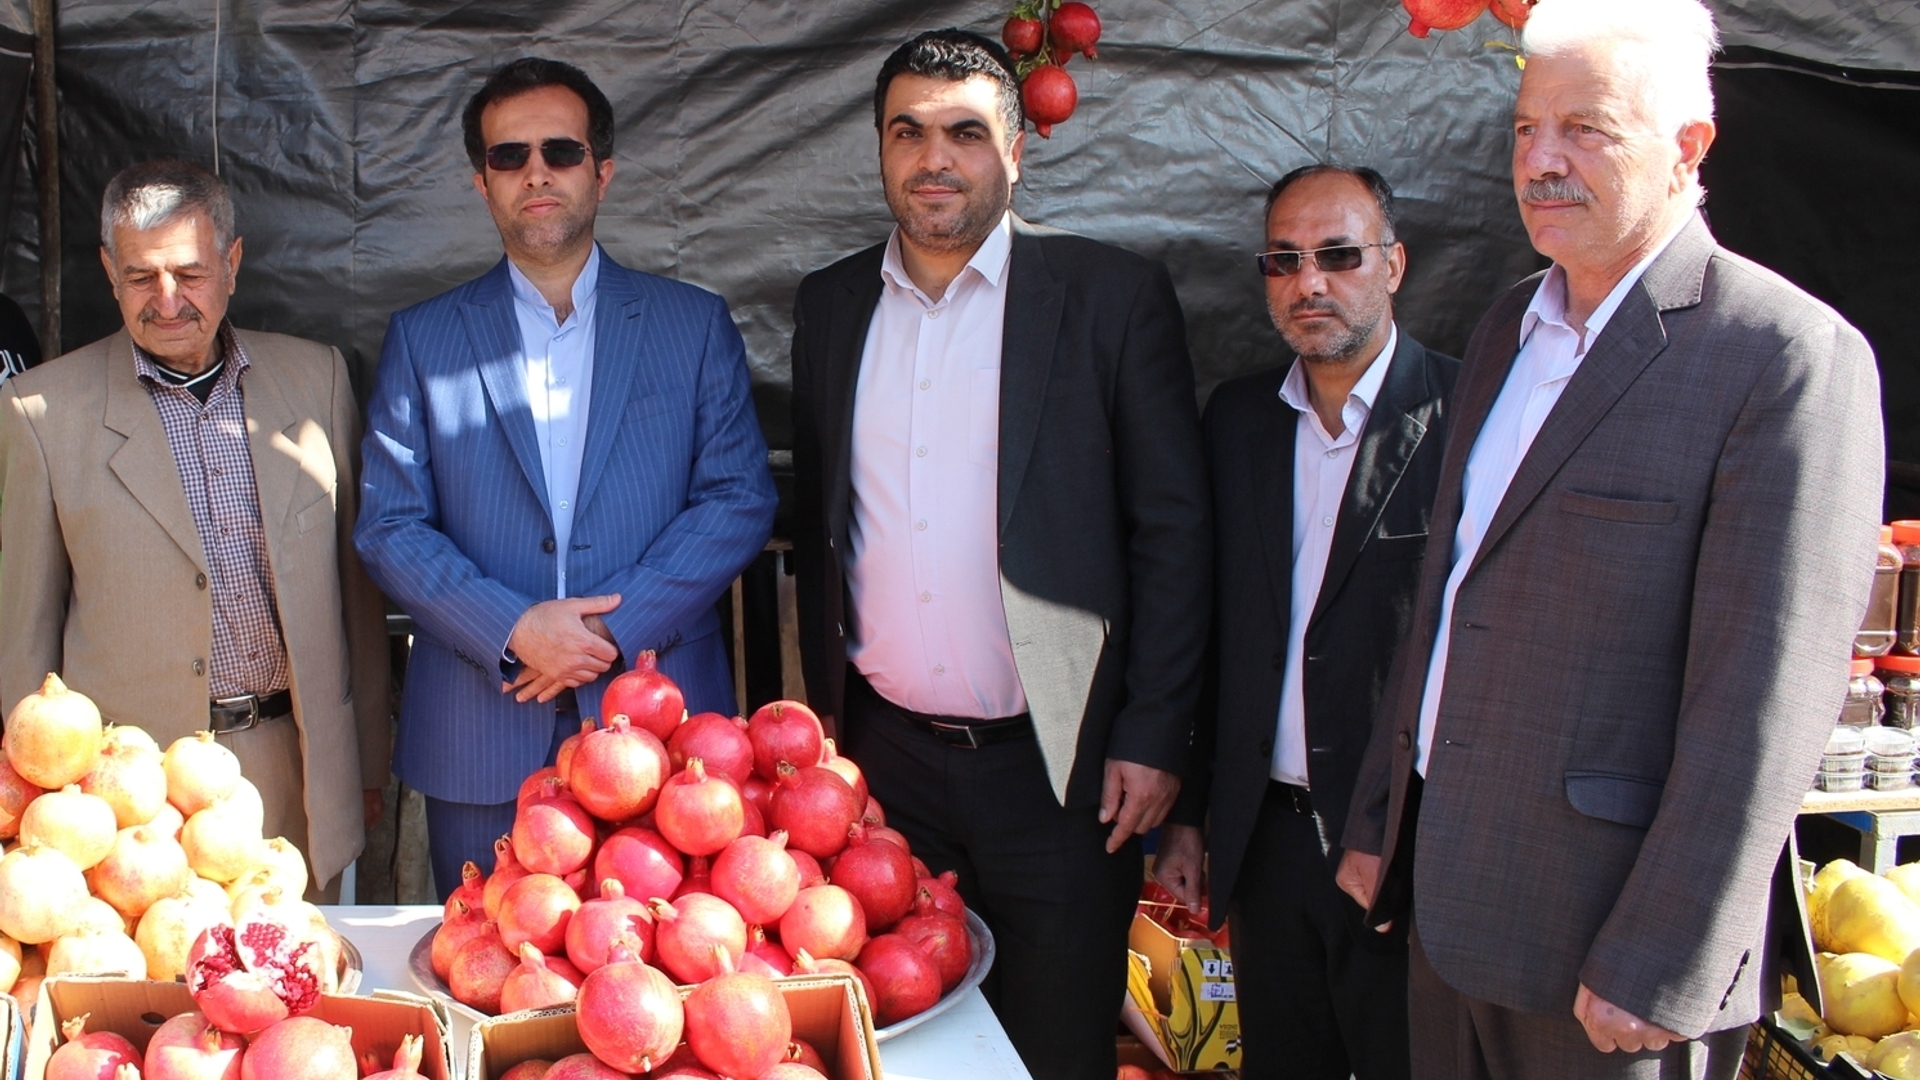 افتتاح و بازدید از غرفه های فروش محصولات و فرآورده های انار در جشنواره انار خورهه